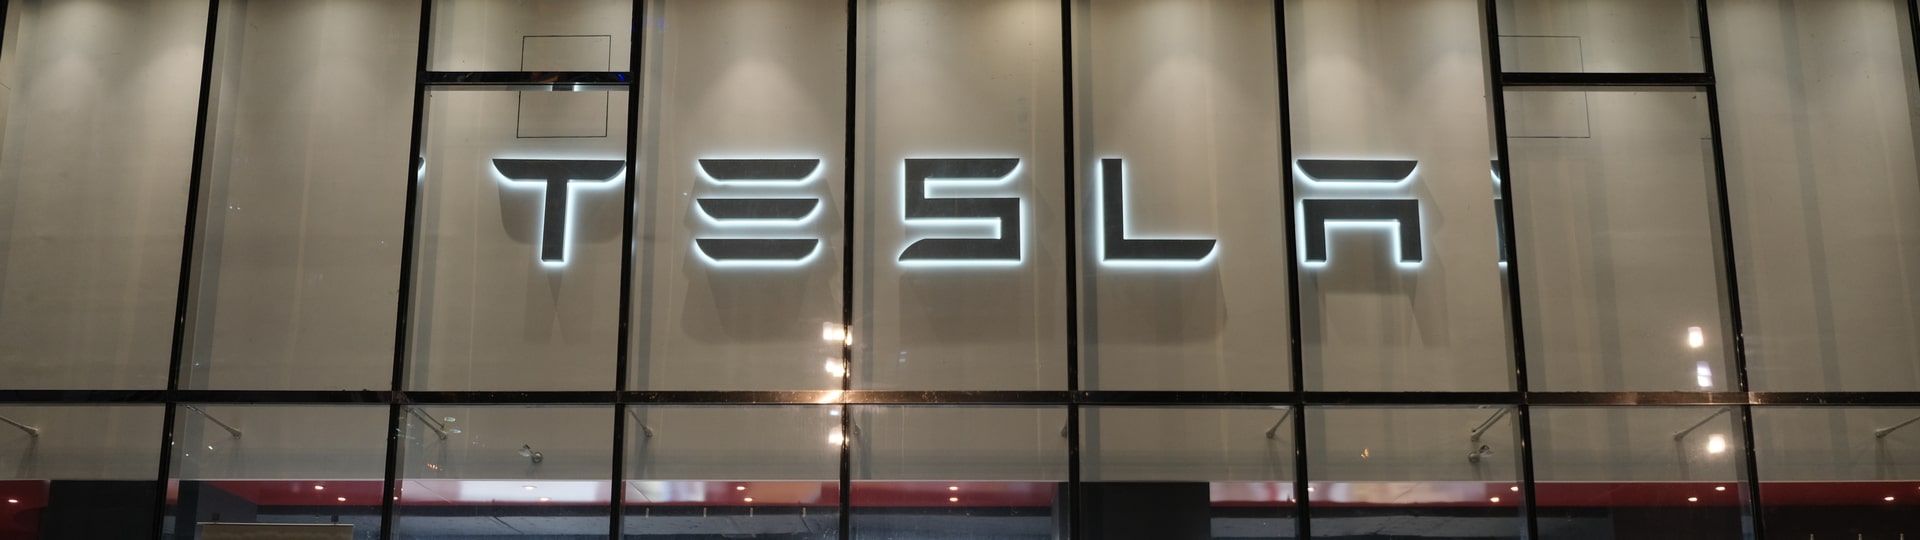 Tesla čelí kritice kvůli otevření nové prodejny v čínské oblasti Sin-ťiang